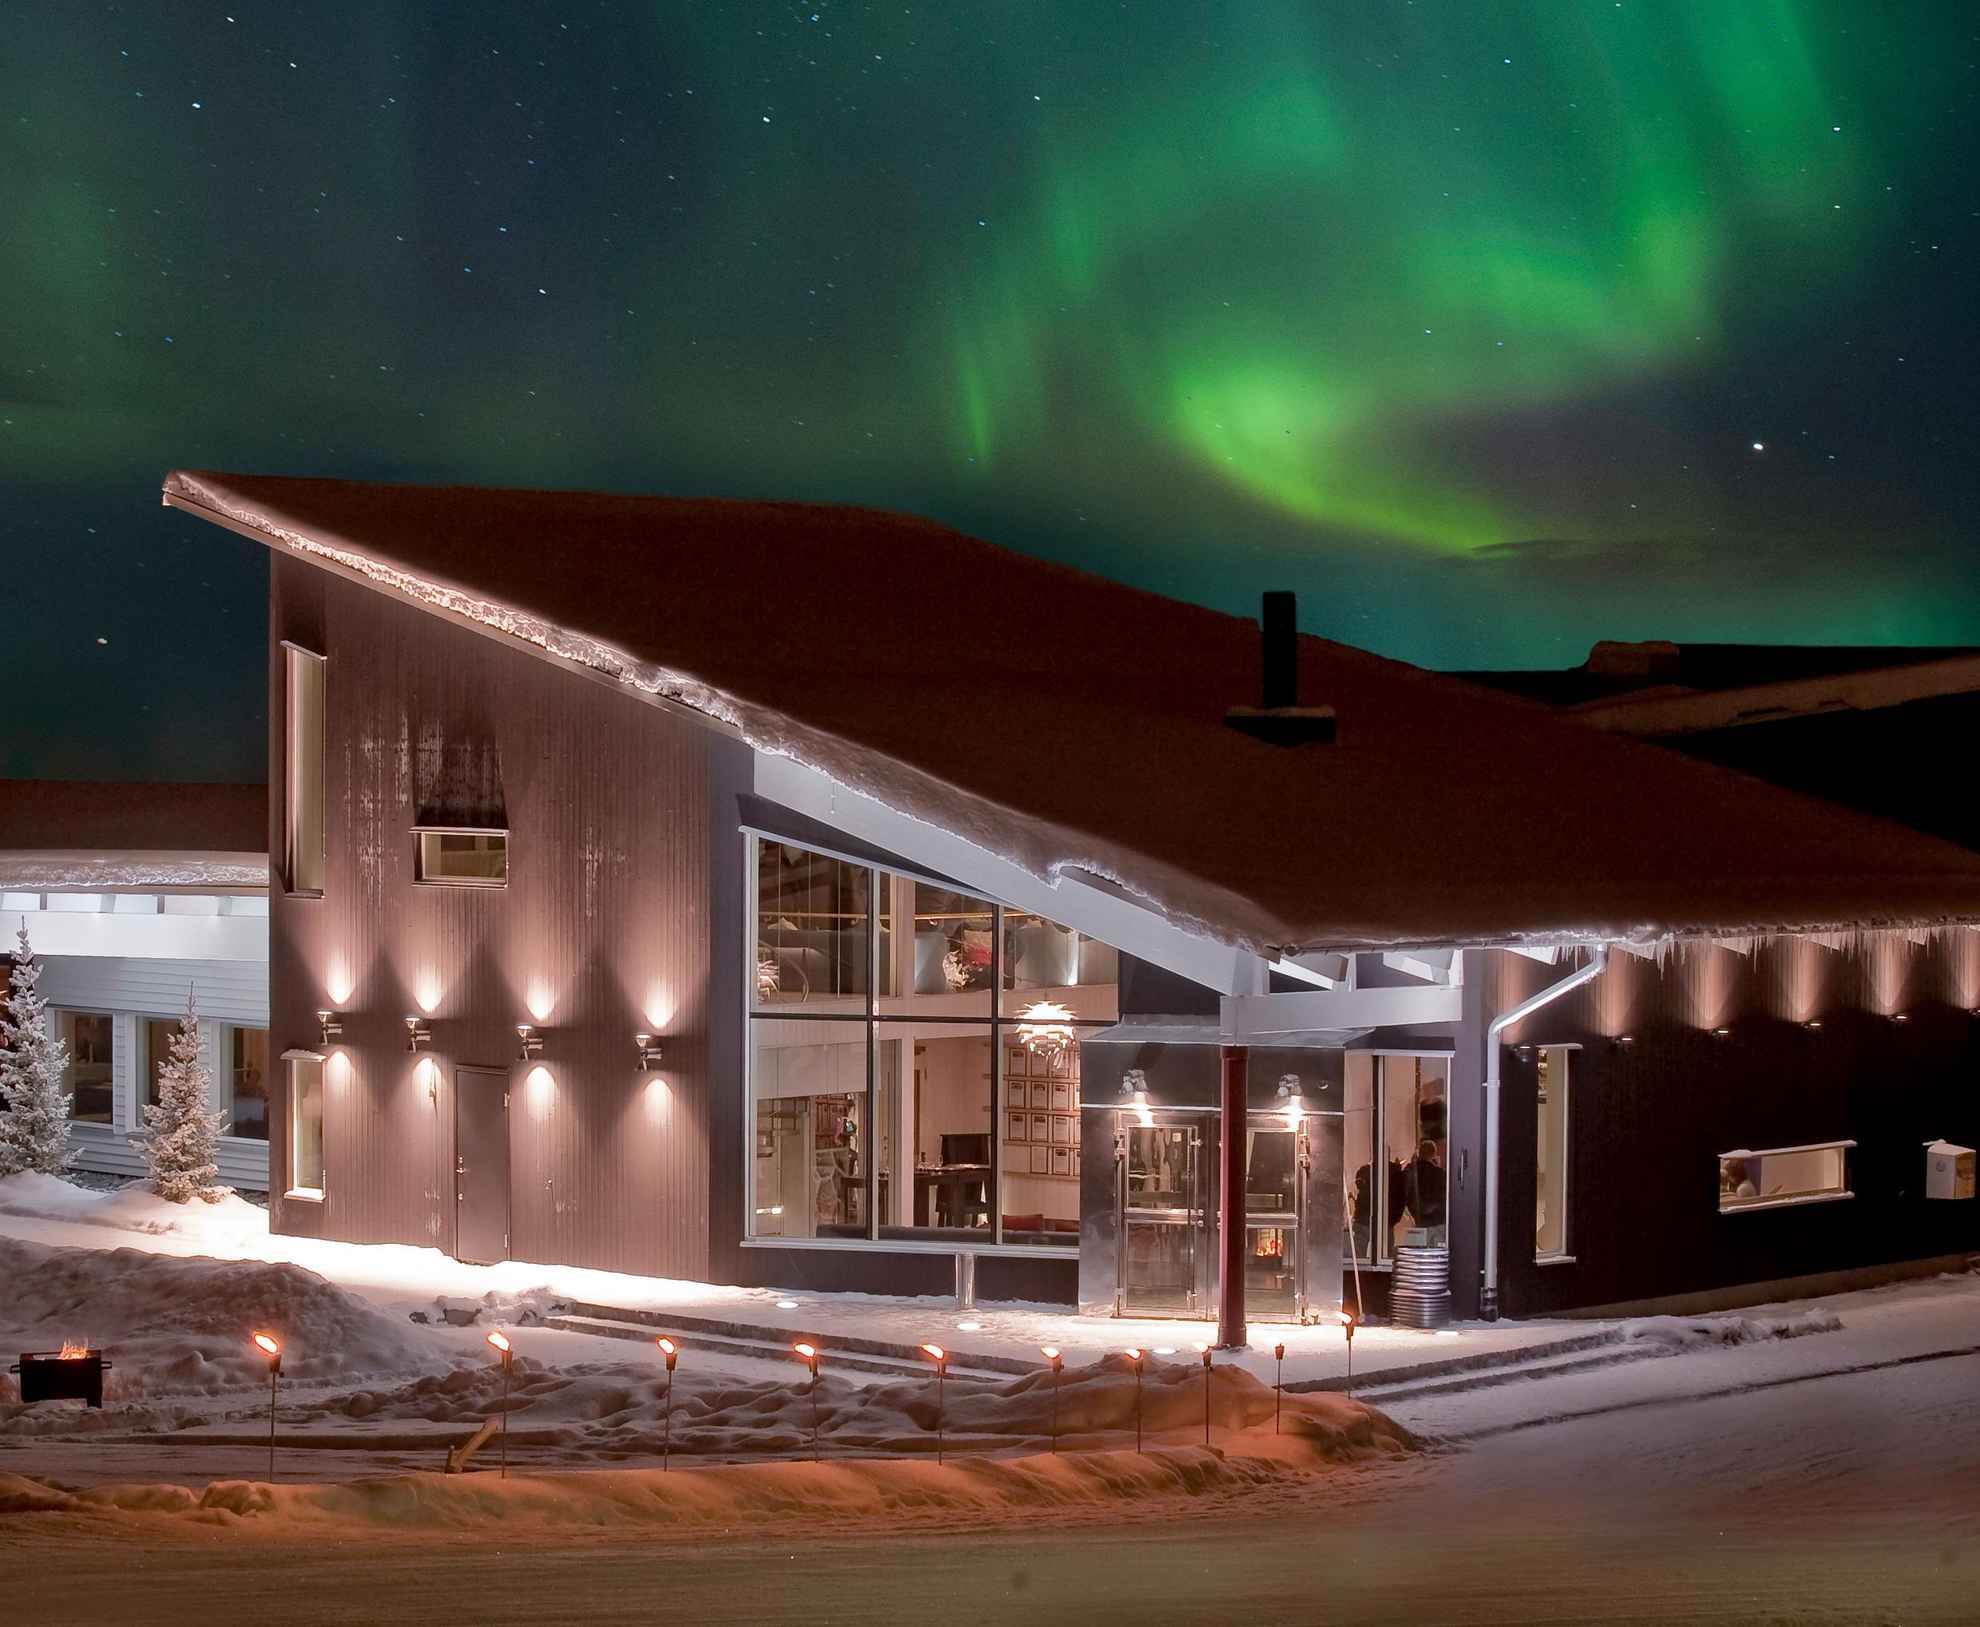 Das Nordlicht tanzt nachts am Winter am Himmel über dem Camp Ripan in Kiruna.